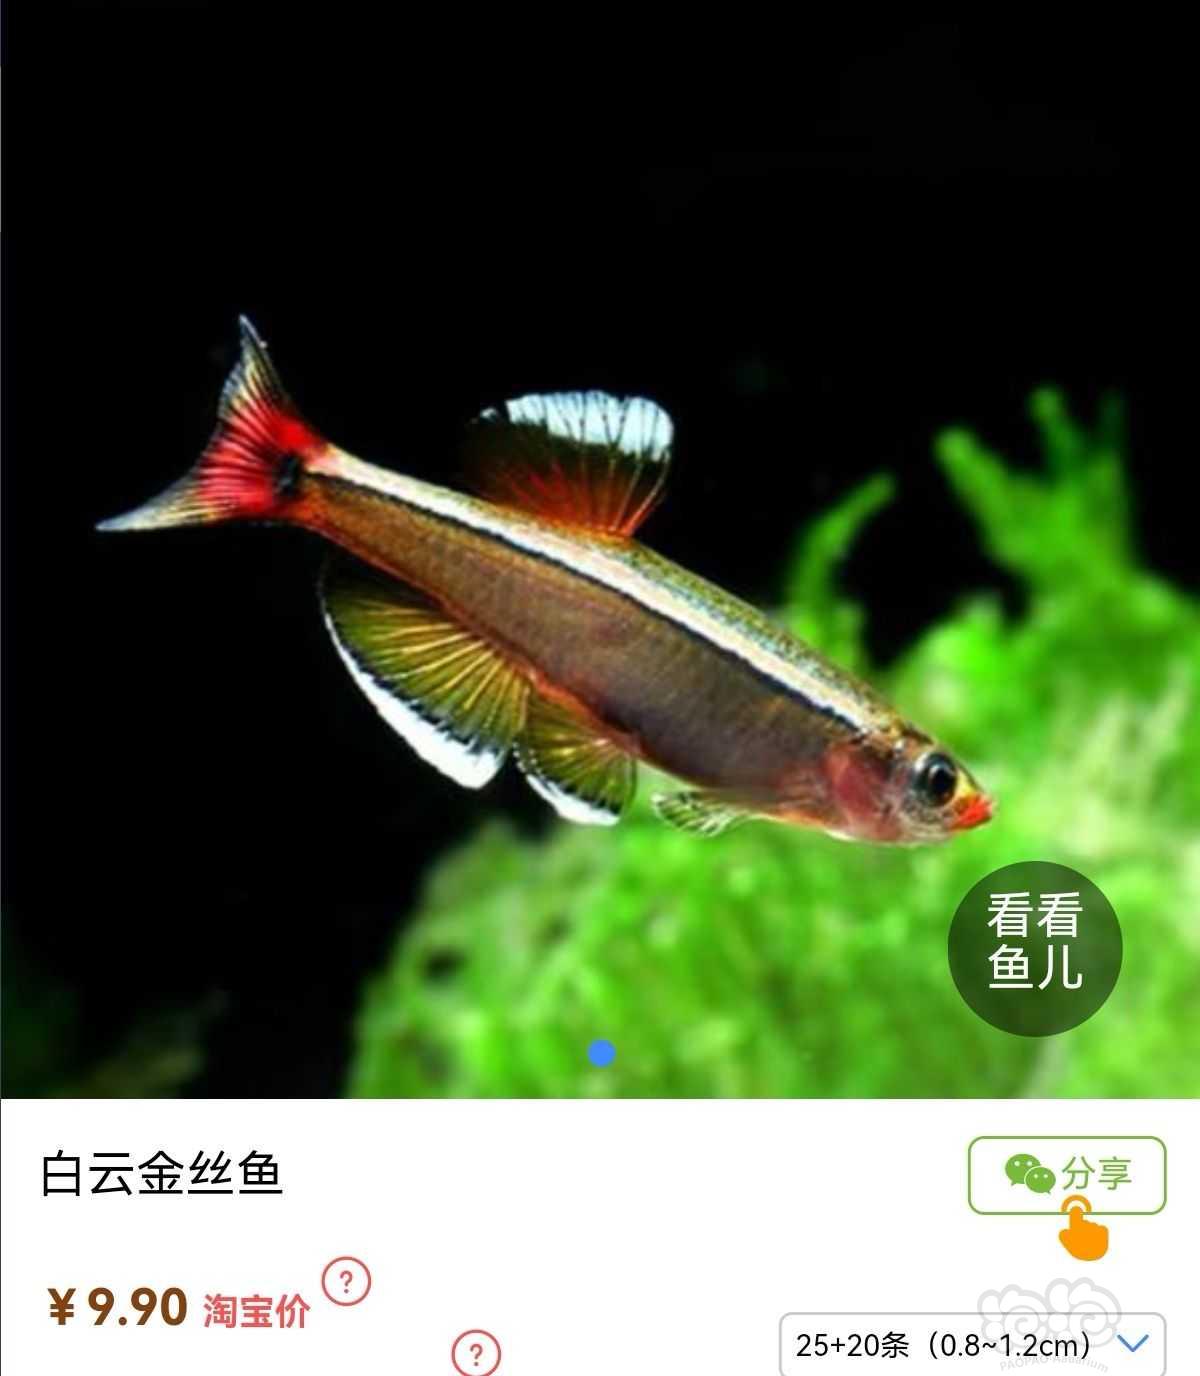 【求购】求购冷水鱼-图1